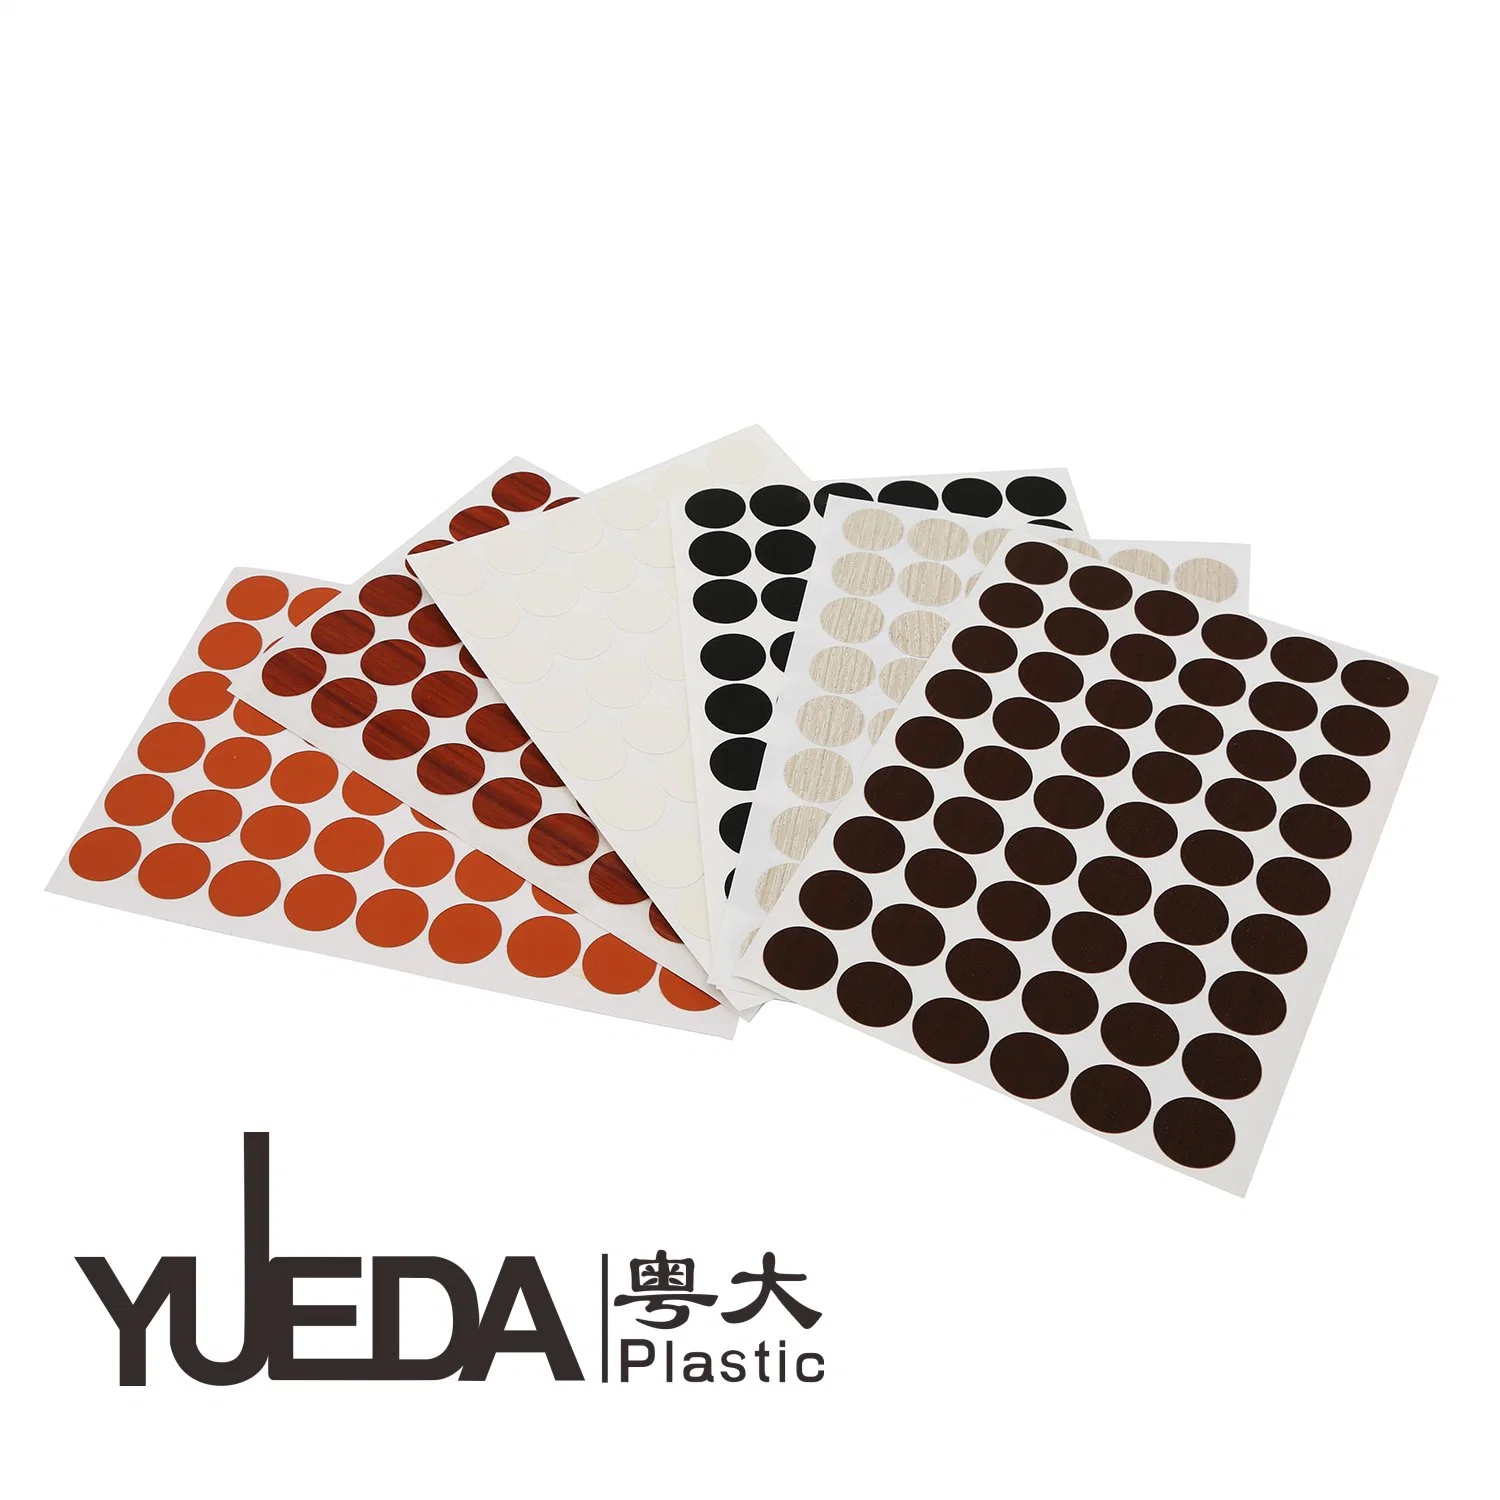 Especializándose en la producción de Accesorios para Muebles Plásticos -Yueda producto Plástico: Borde de banda-PVC tornillo de cubierta de adhesivo- PVC Perfil! Soporte personalizado